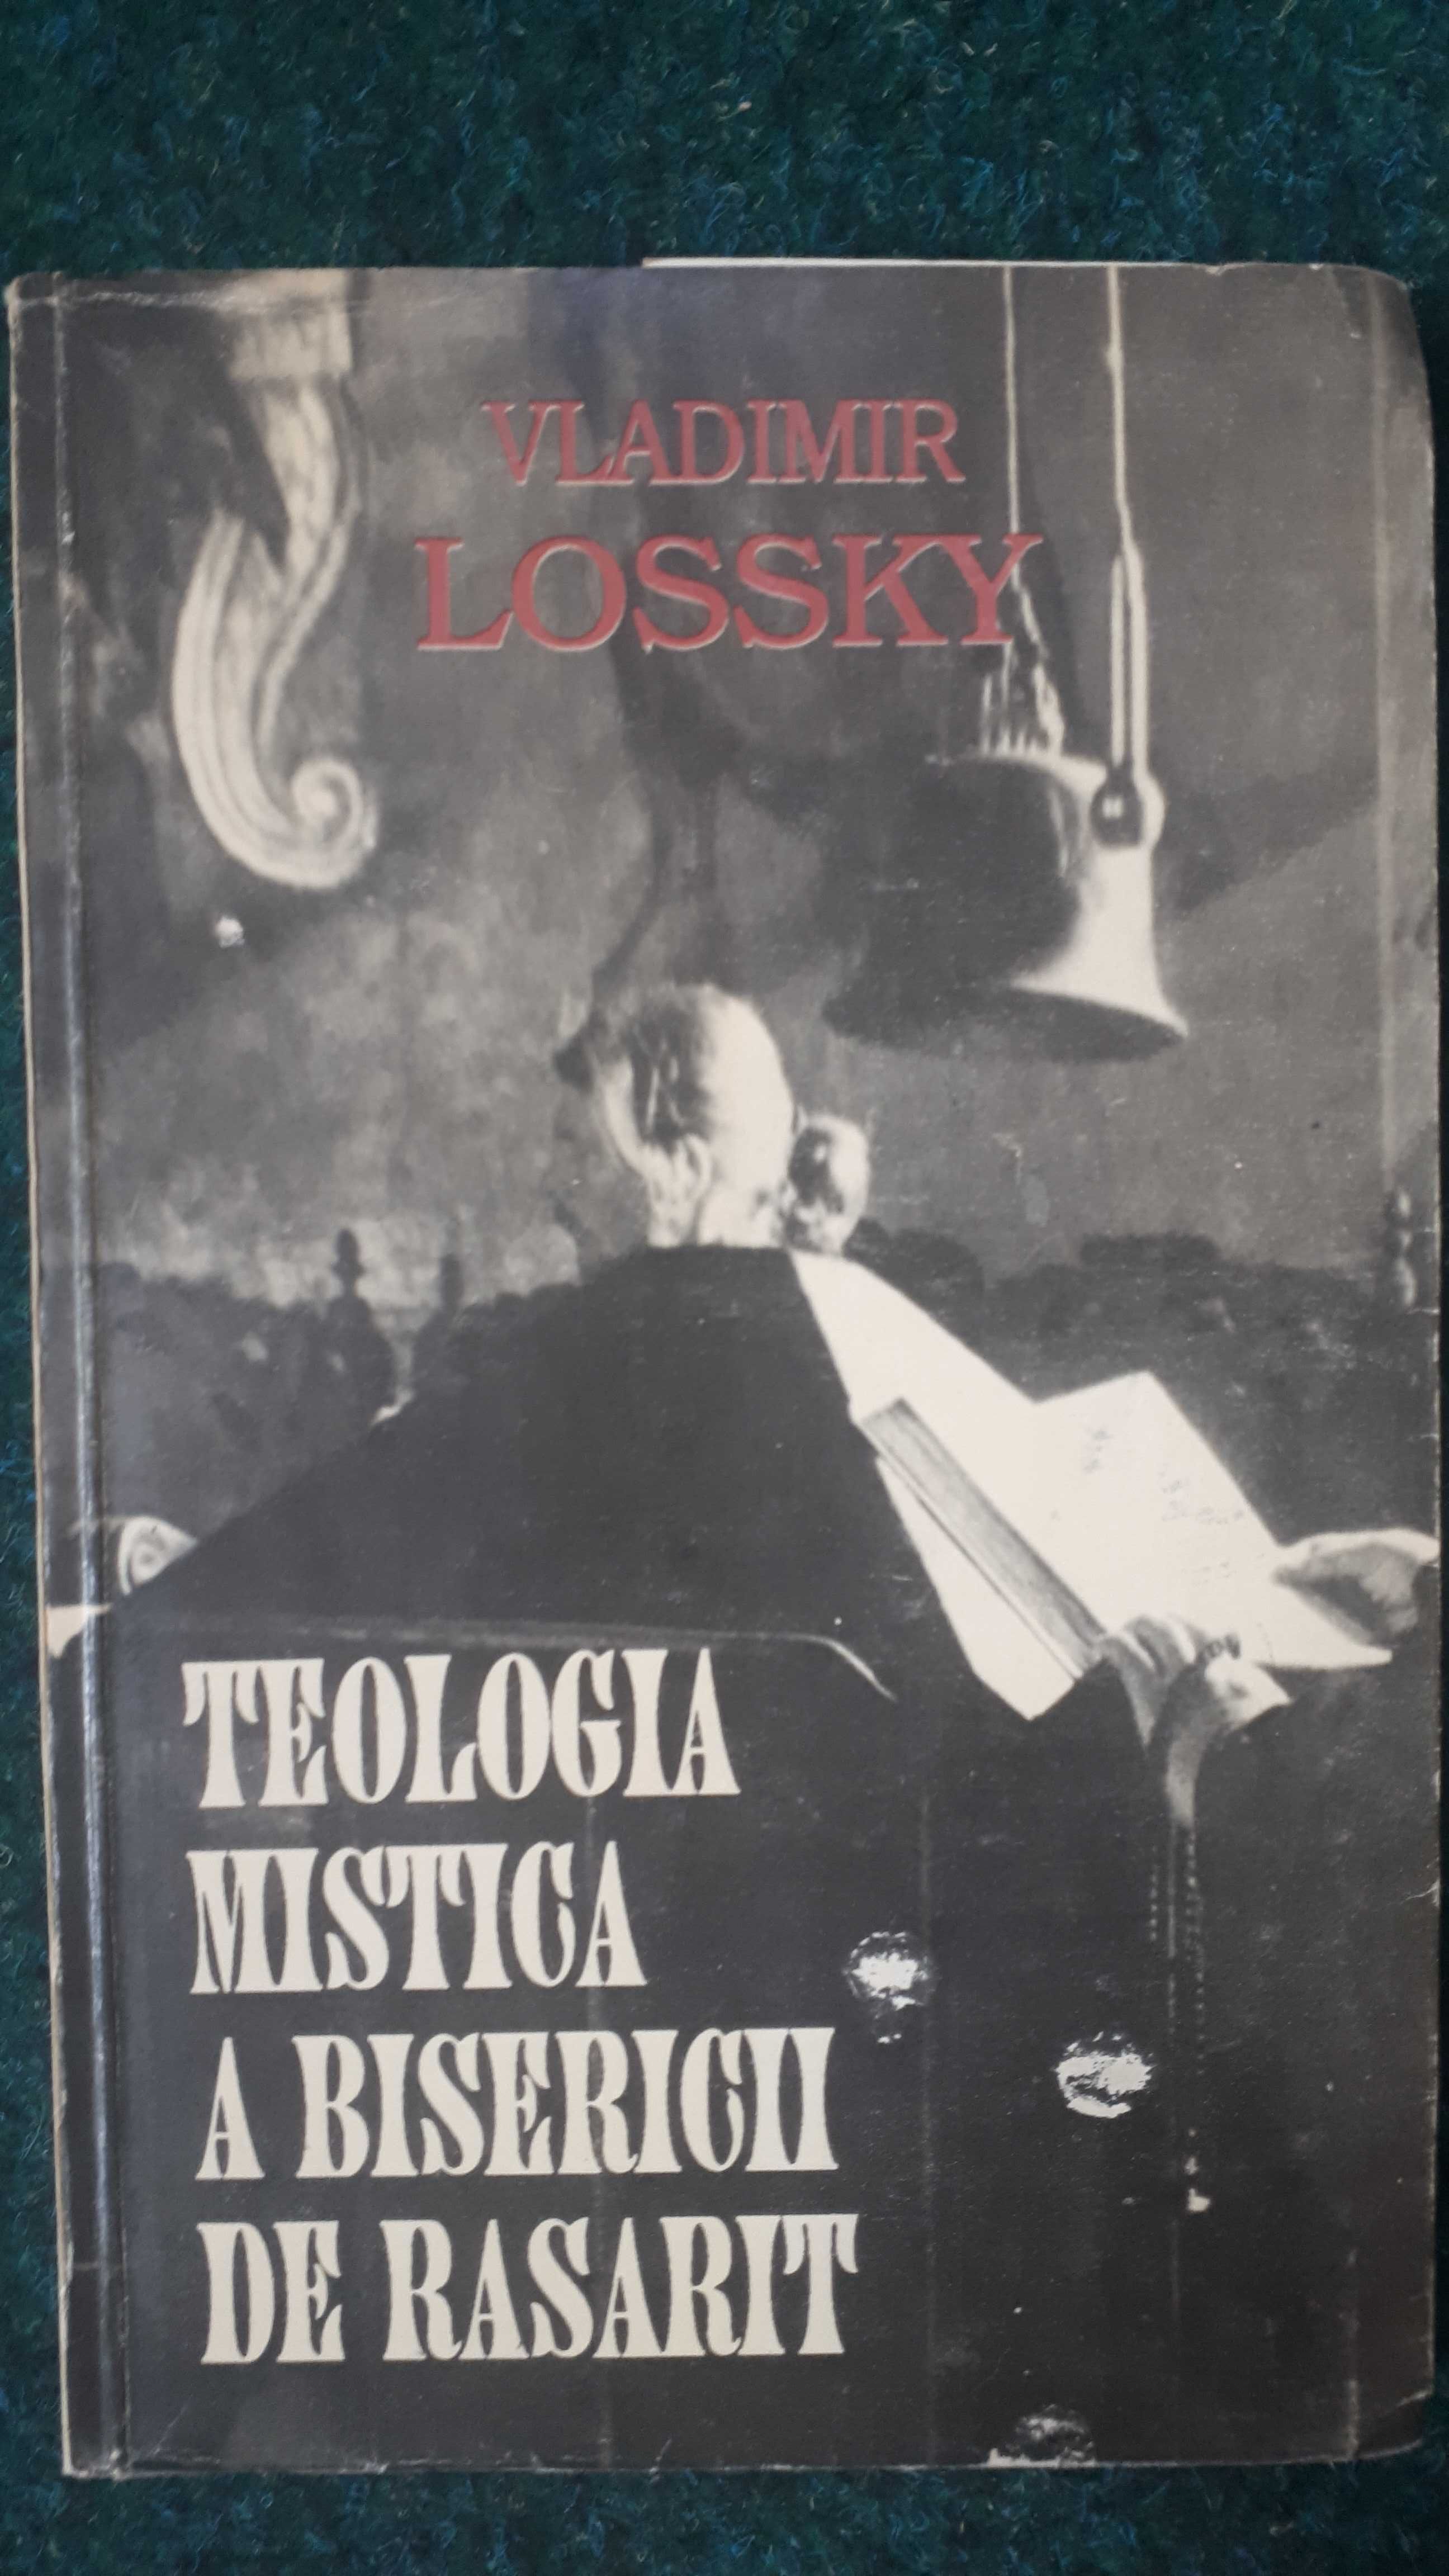 Teologia mistică a bisericii de răsărit, Vladimir Lassky